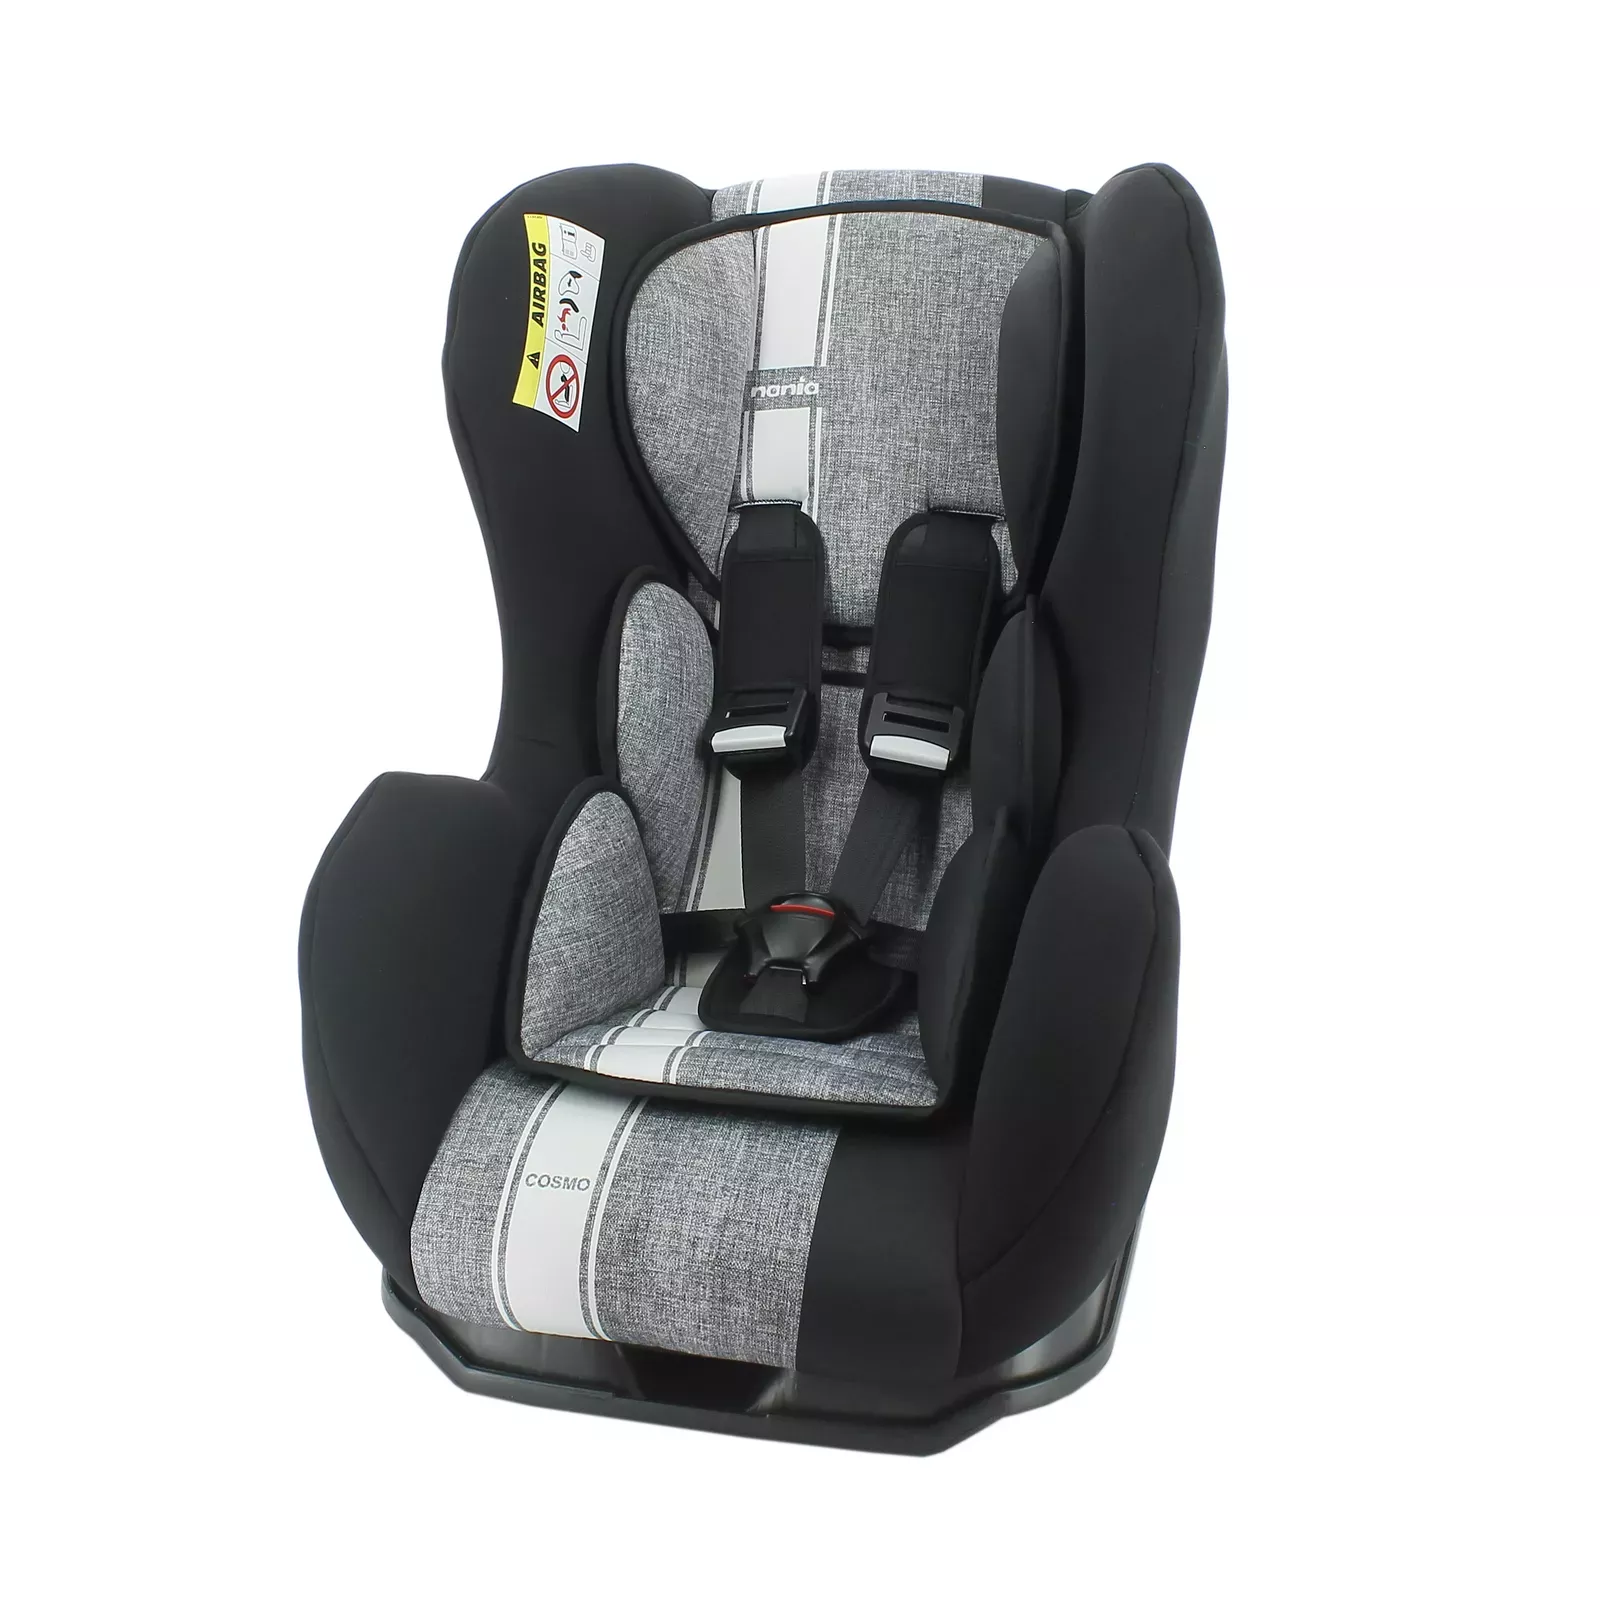 Shop Lv Car Seat Cover online